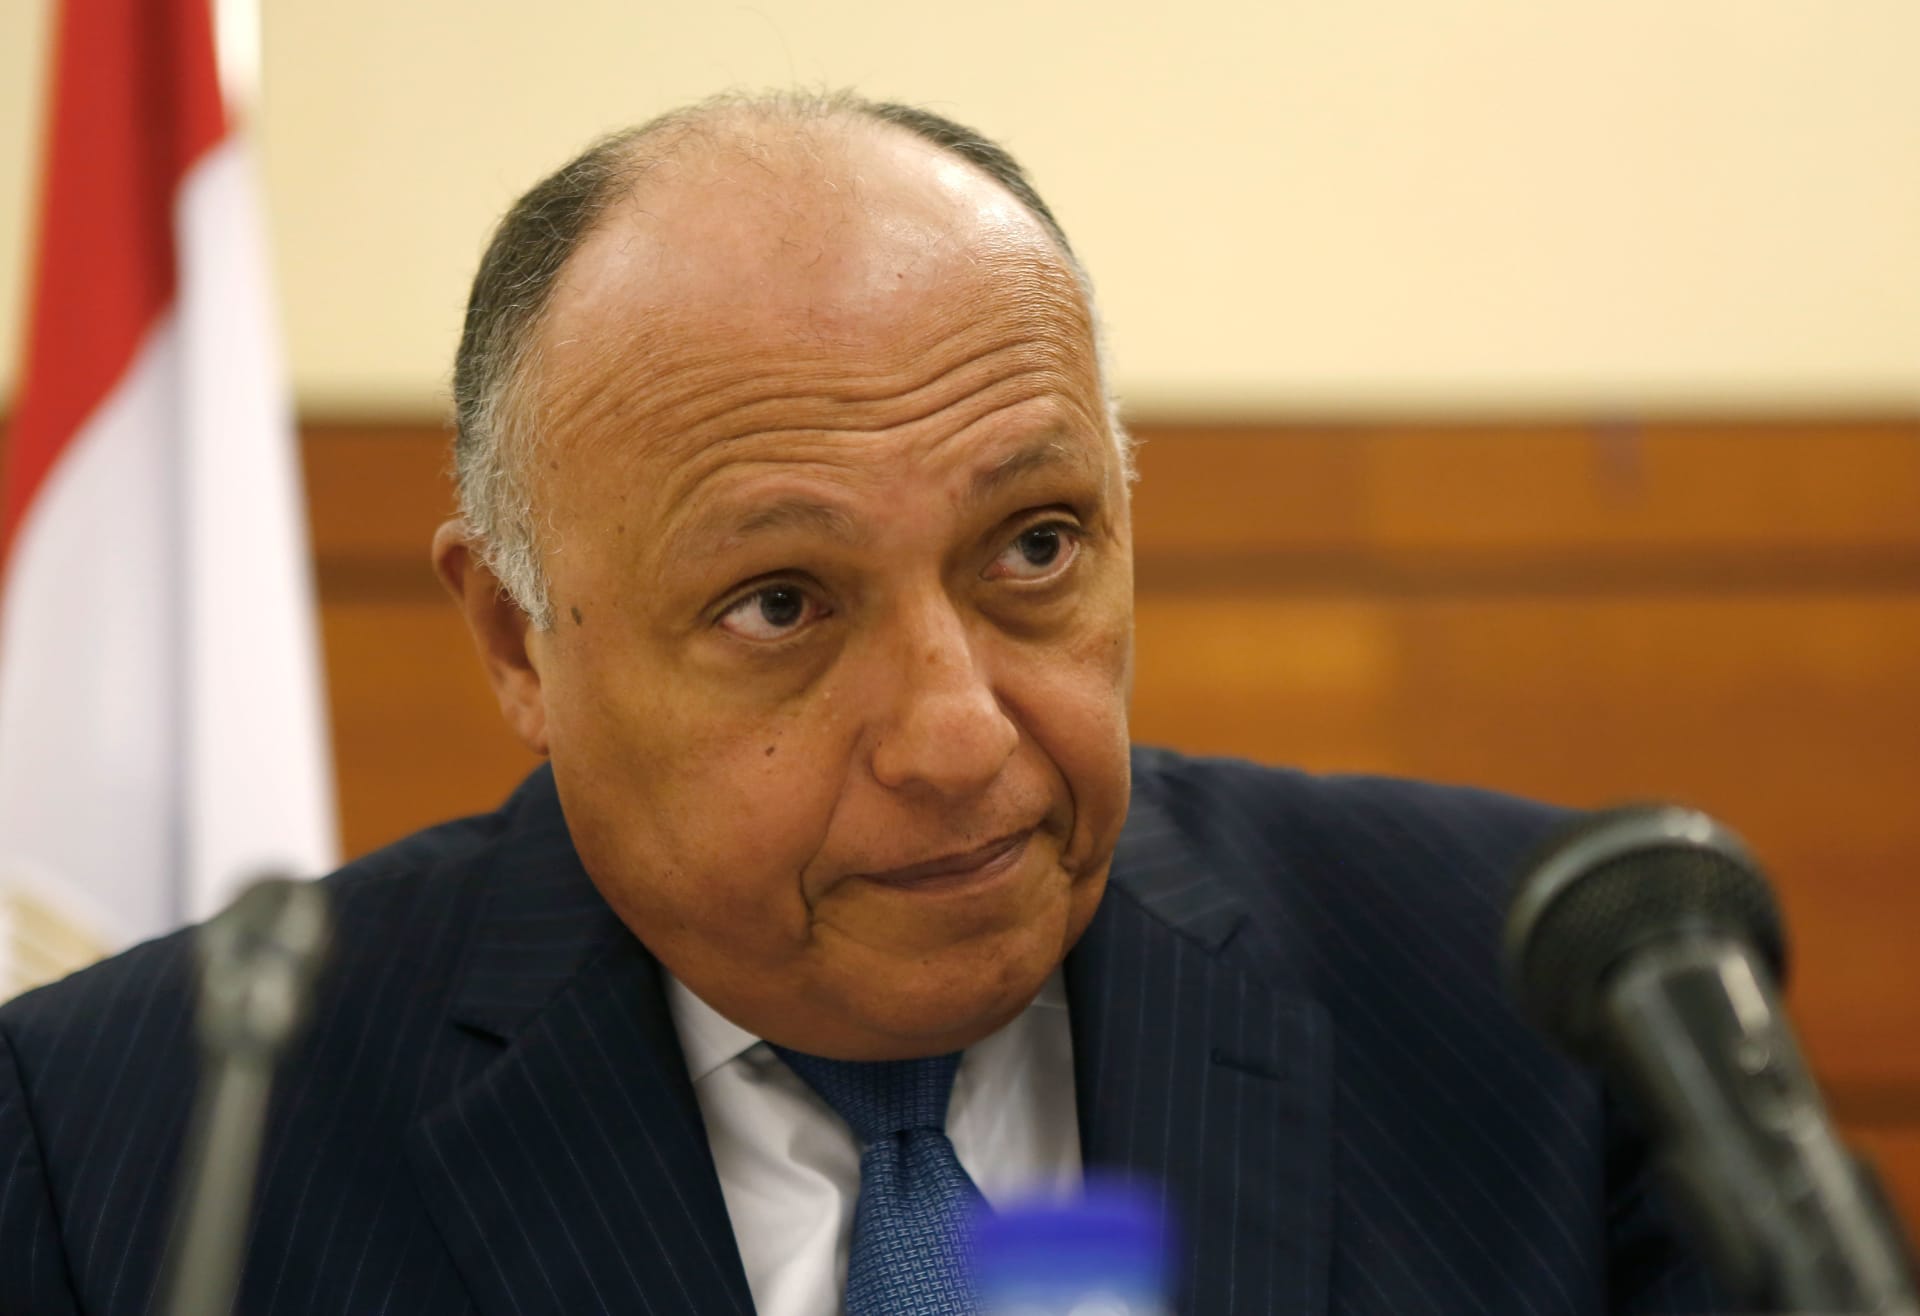 وزير الخارجية المصري يتهم تركيا وقطر بـ"دعم المتطرفين" في ليبيا 